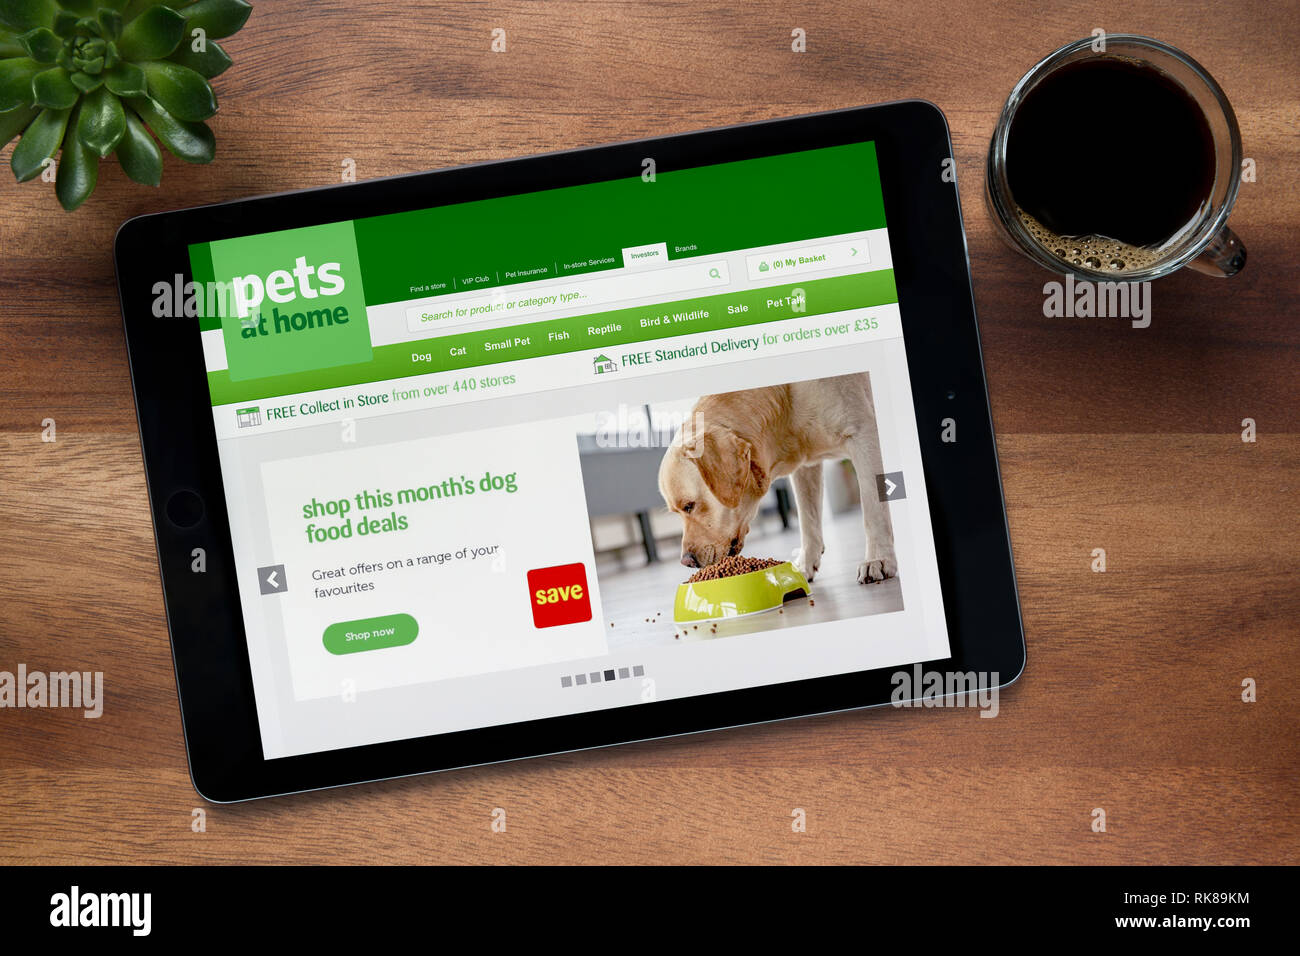 Die Website der Haustiere zu Hause ist, auf einem iPad Tablet gesehen, auf einer hölzernen Tisch zusammen mit einem Espresso und einem Haus Anlage (nur redaktionelle Nutzung). Stockfoto